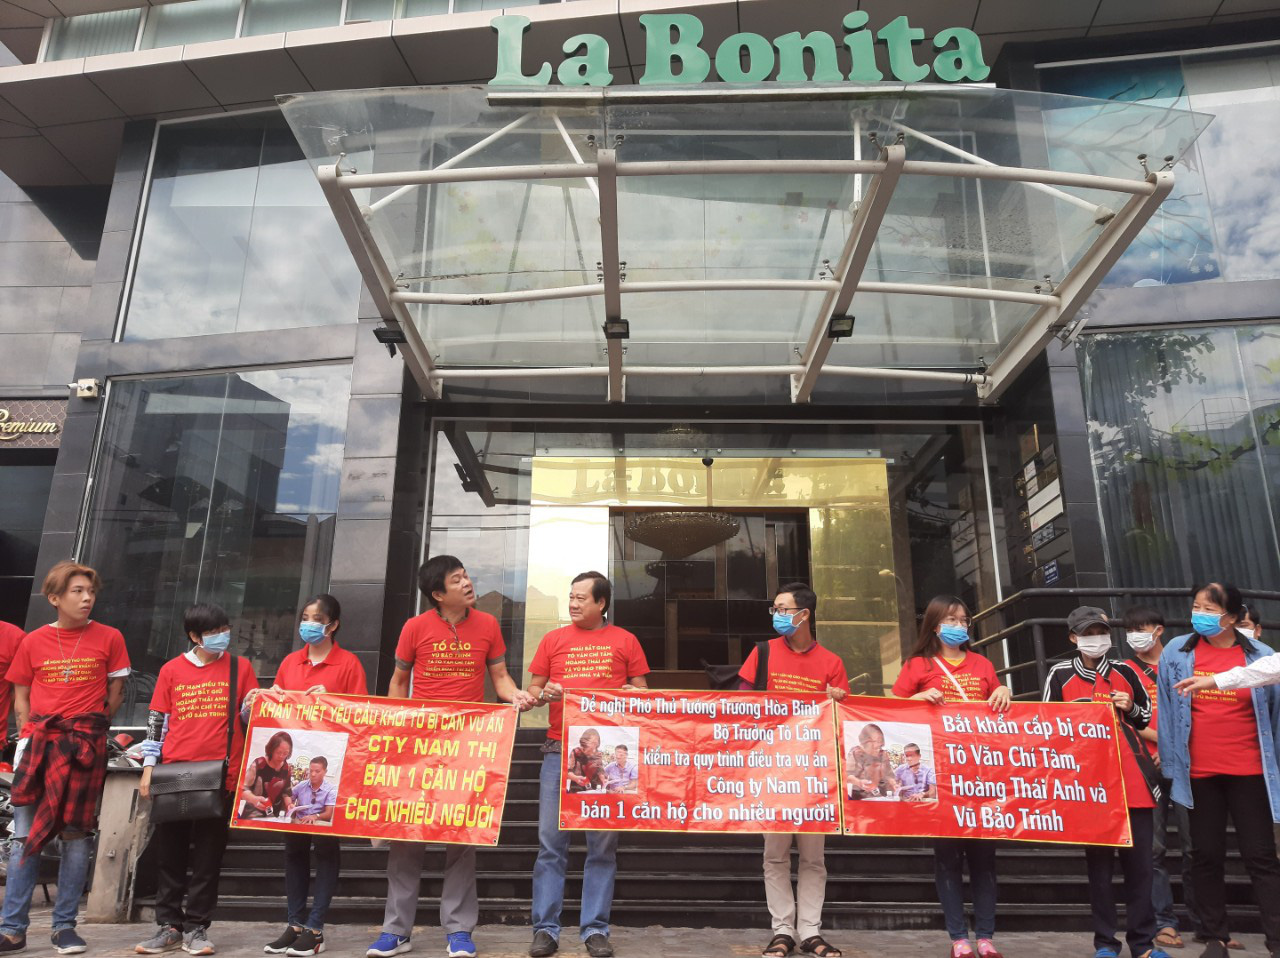 Bắt giam nữ Việt kiều cùng đồng bọn bán căn hộ dự án La Bonita cho nhiều người ở Sài Gòn - Ảnh 1.